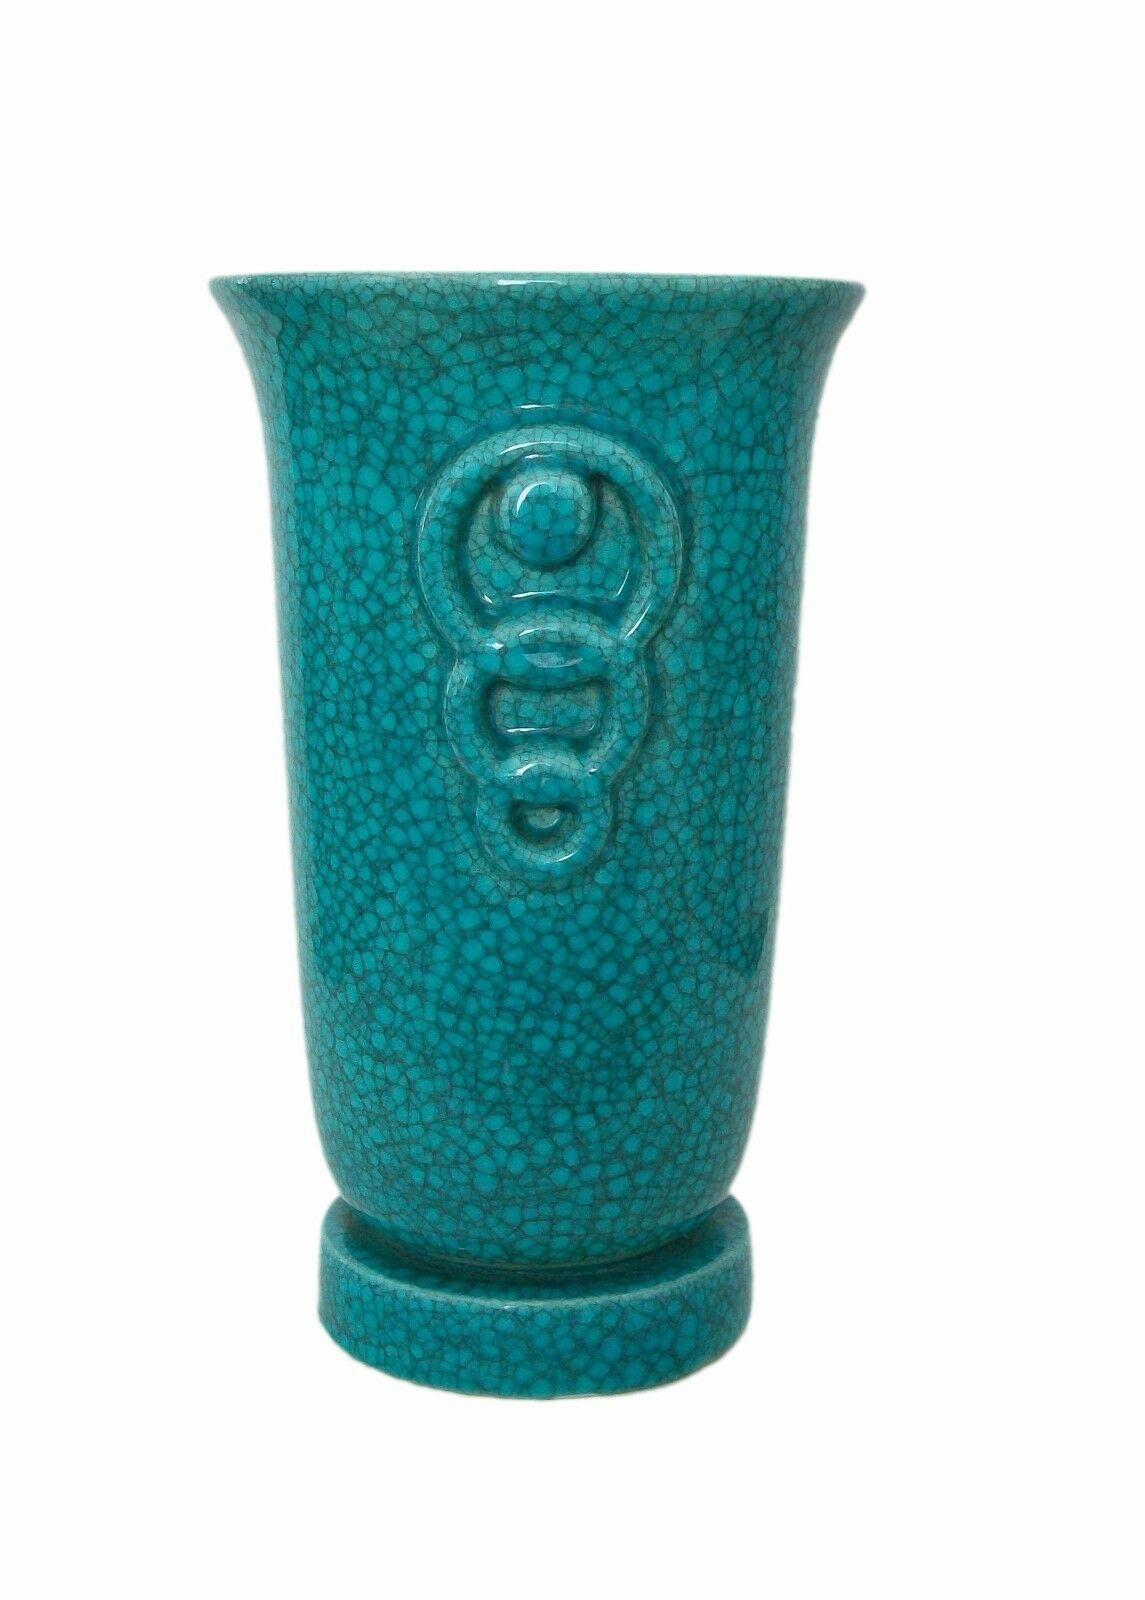 Ceramic Art Deco Turquoise Crackle Glaze Vase, Belgium, Circa 1930's For Sale